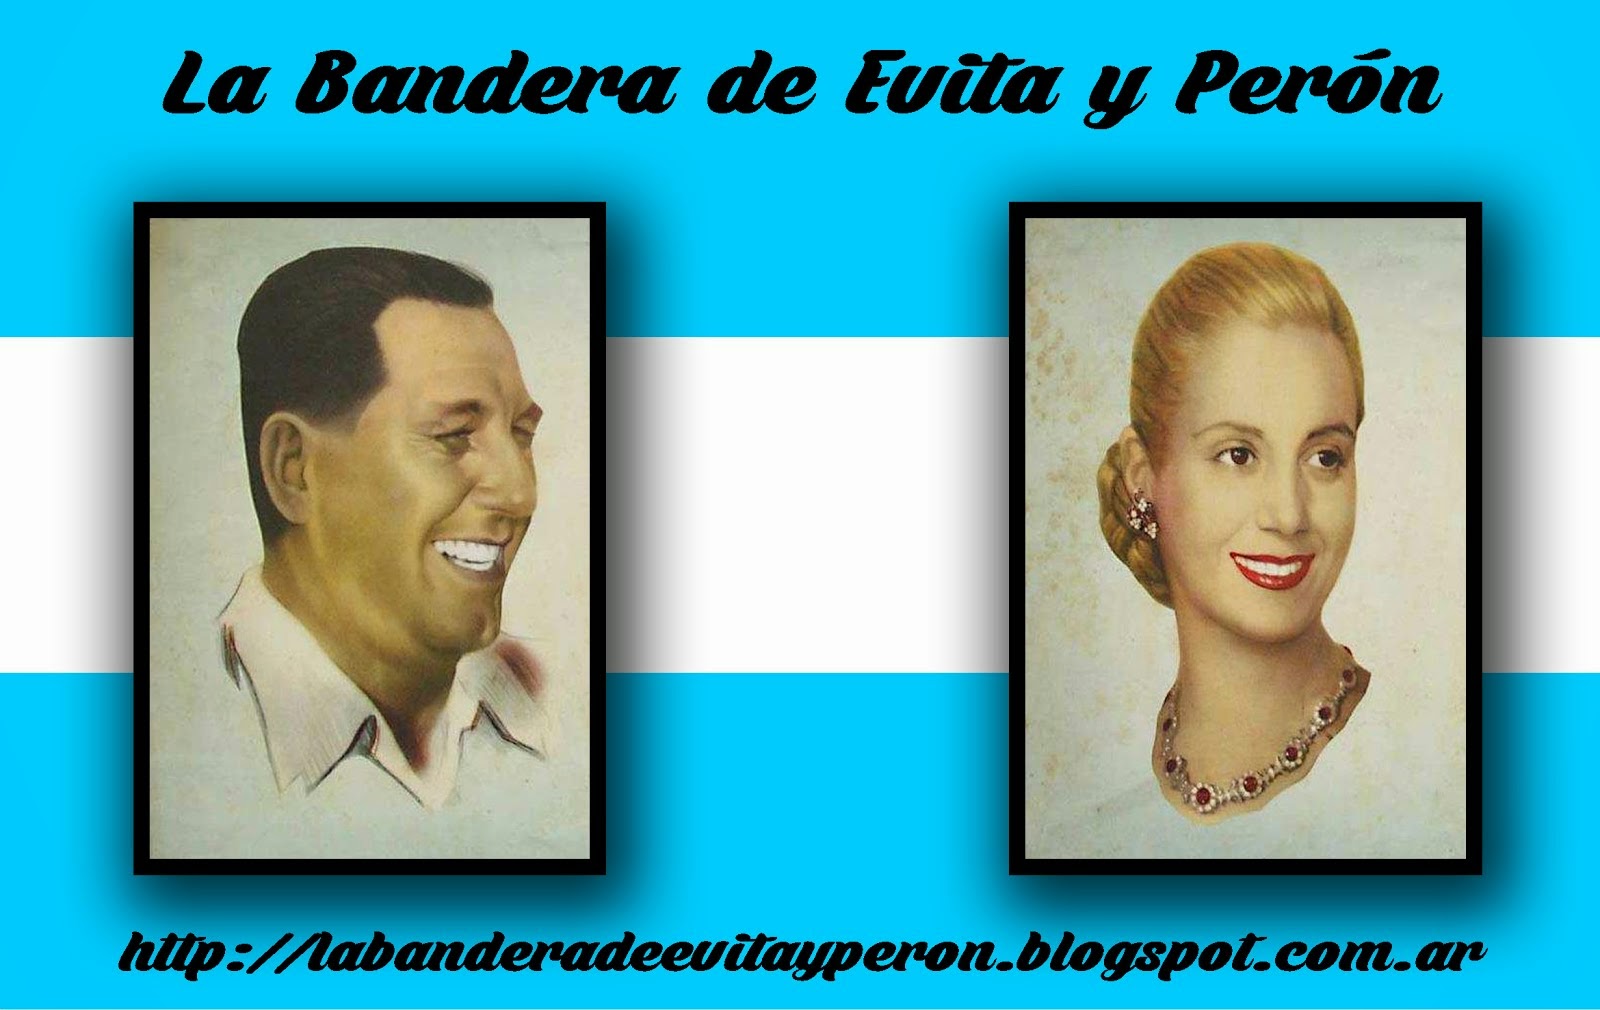 La Bandera de Evita y Perón